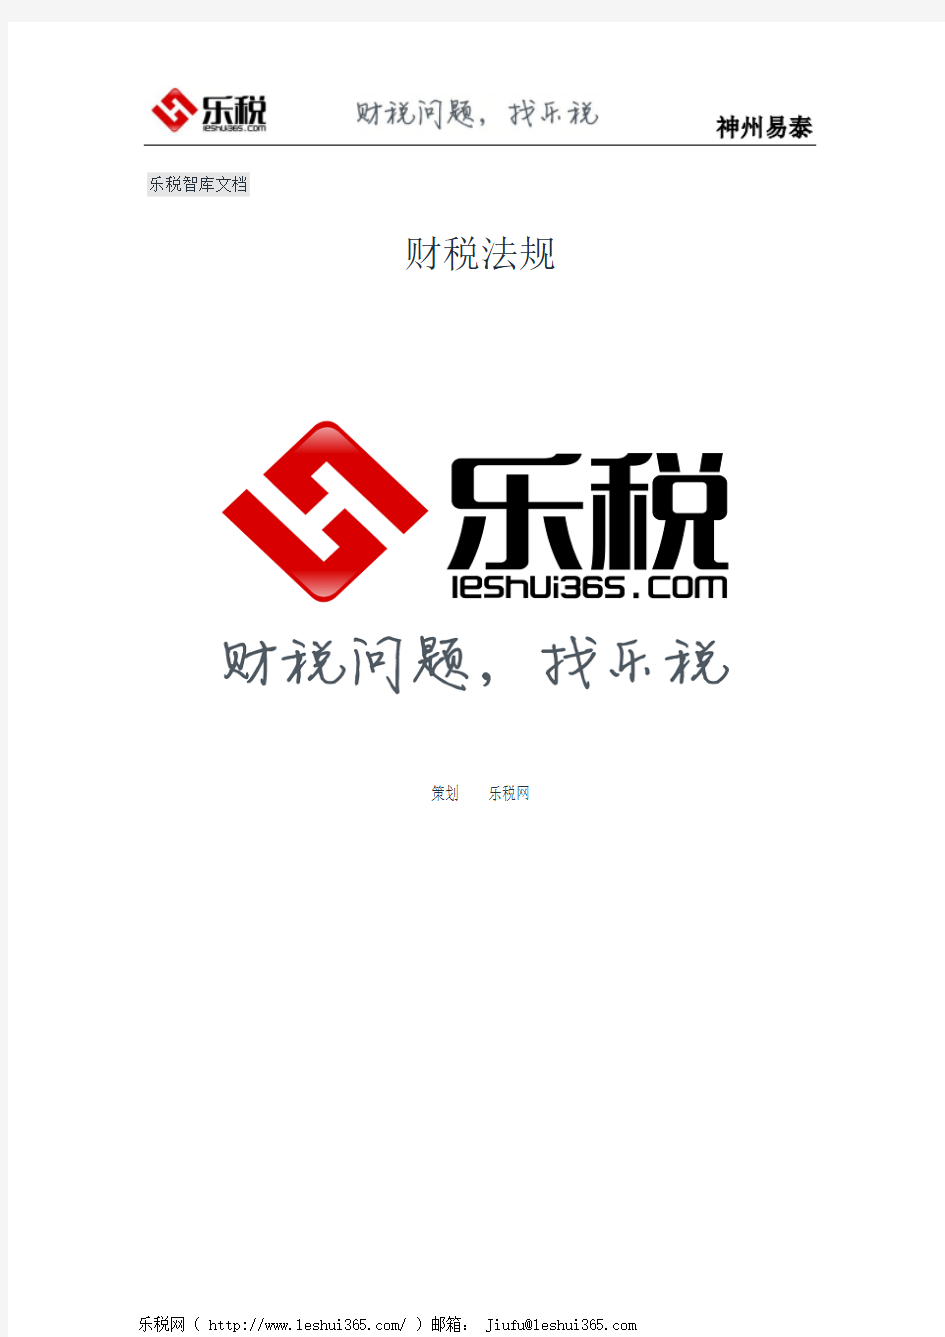 四川省国家税务局关于发布一般纳税人网上申报操作说明的通知